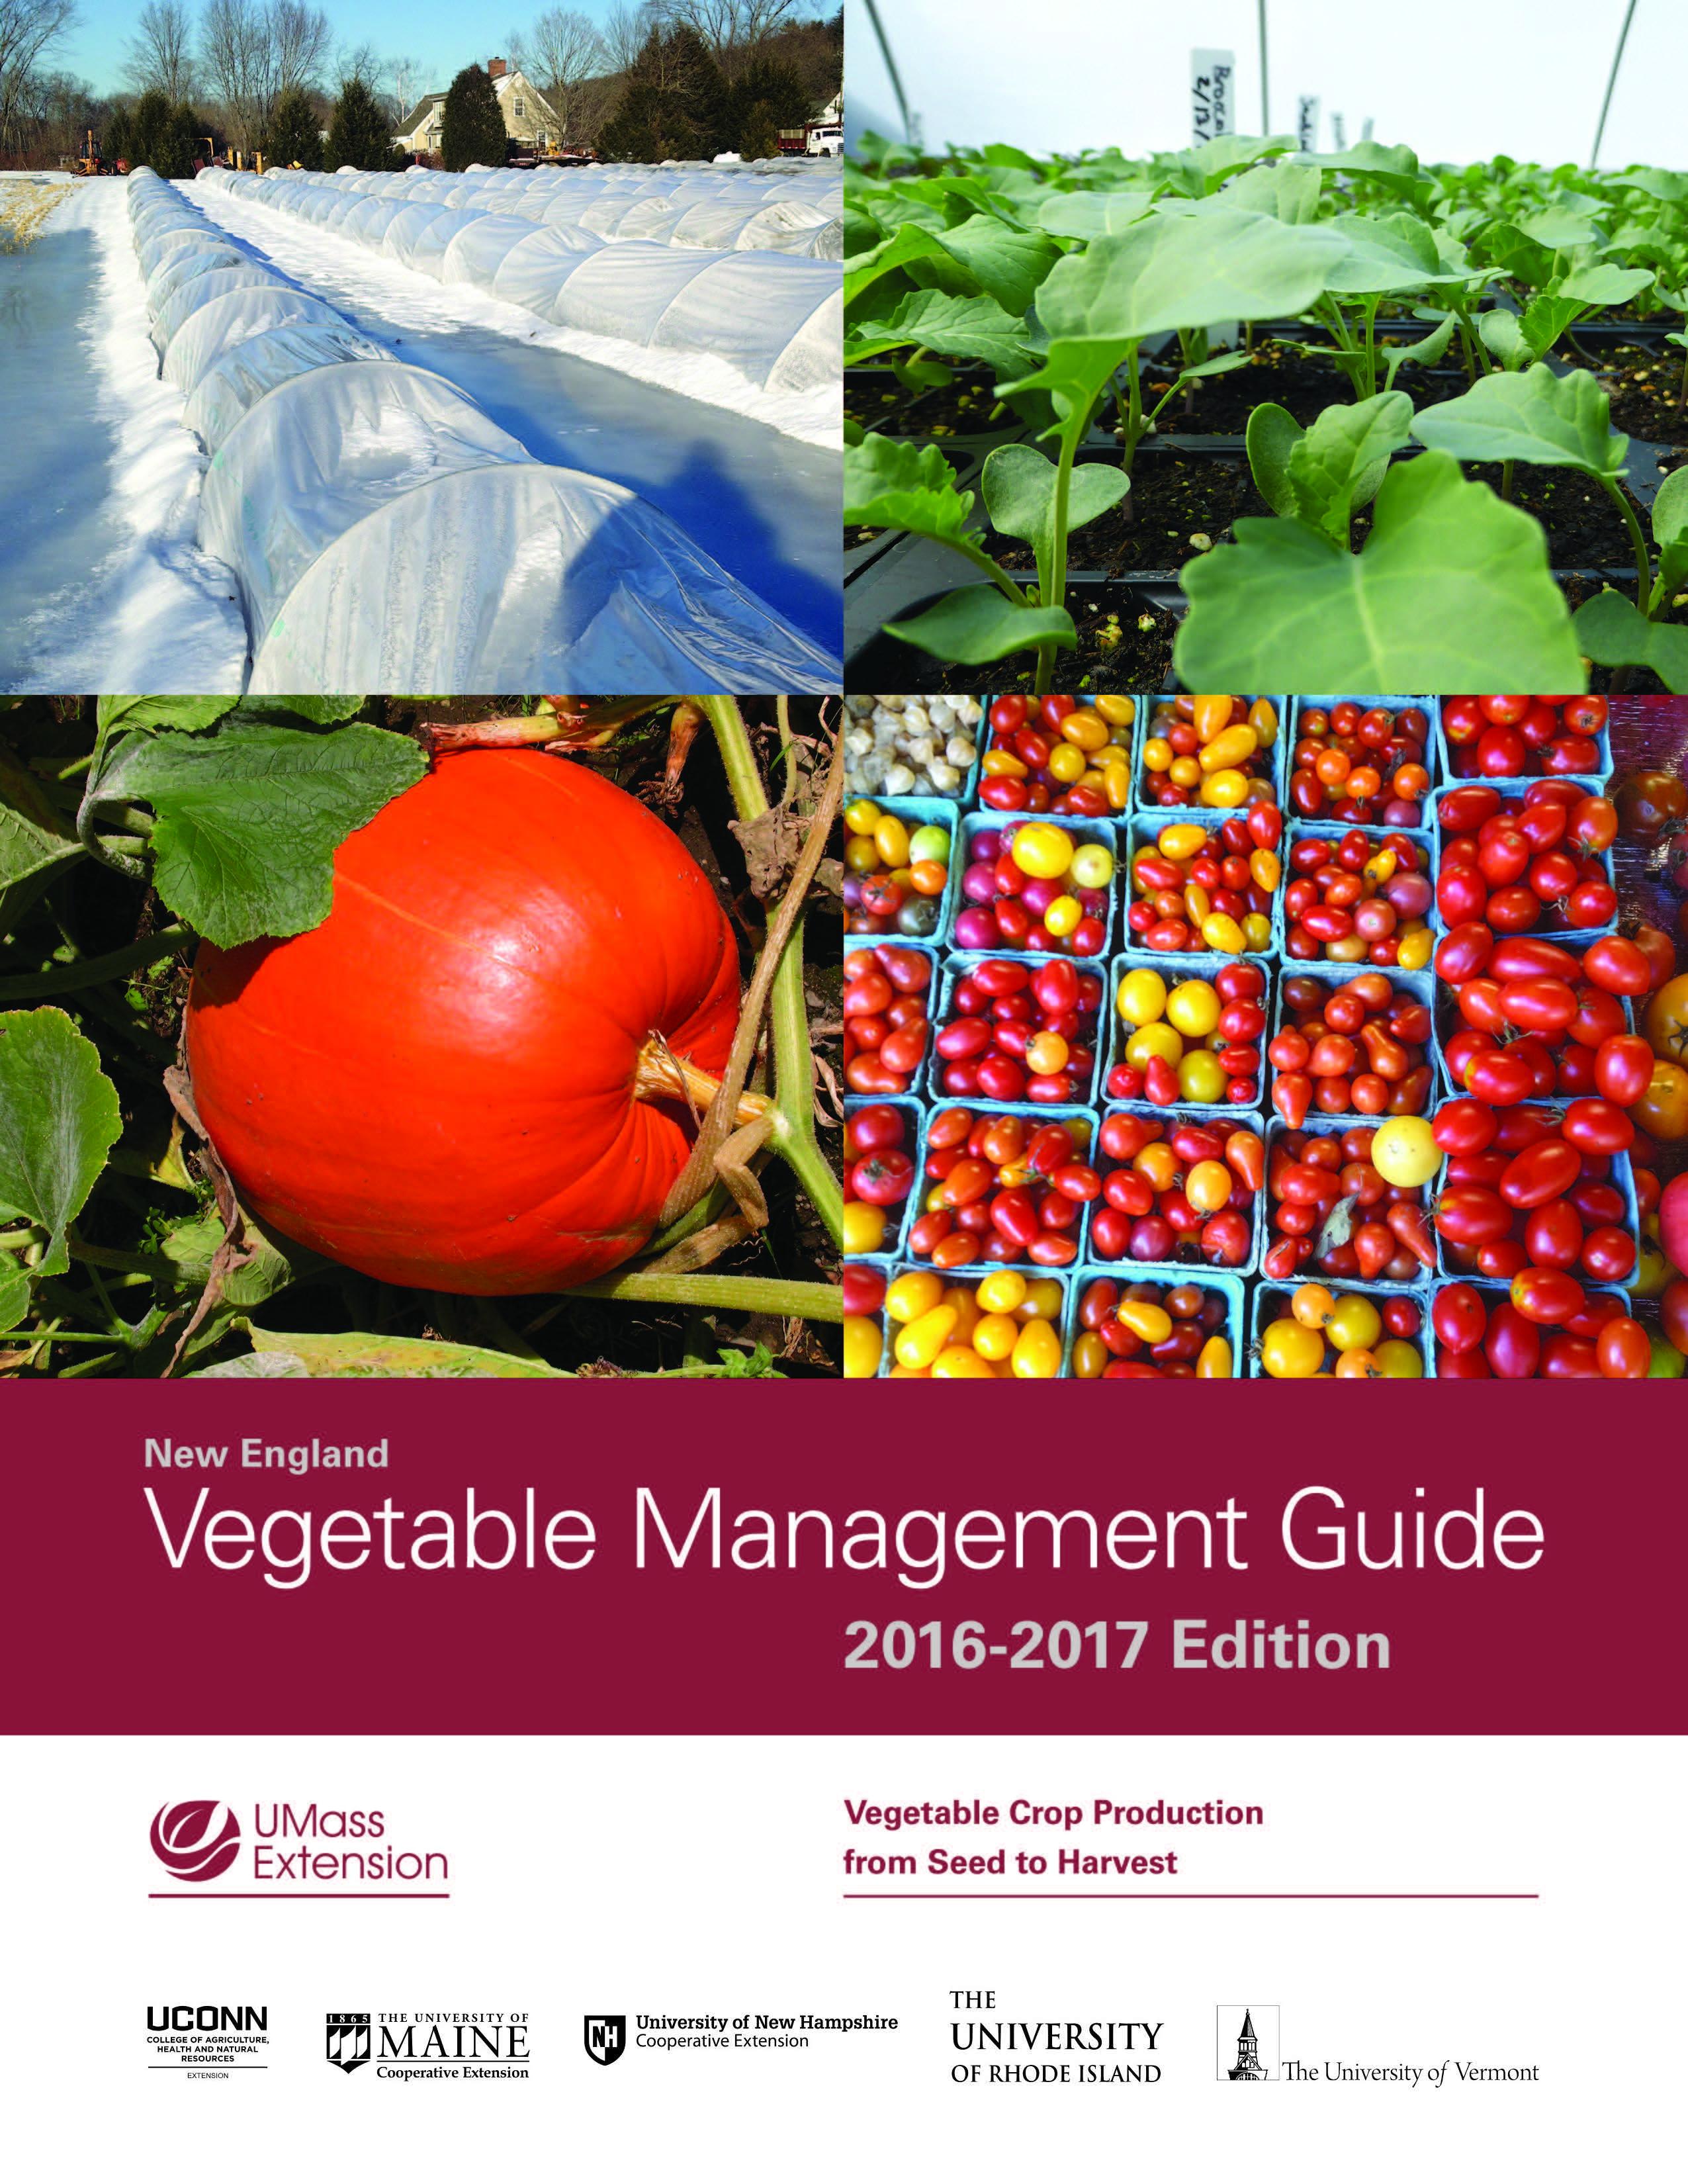 NE Veg Management Guide cover